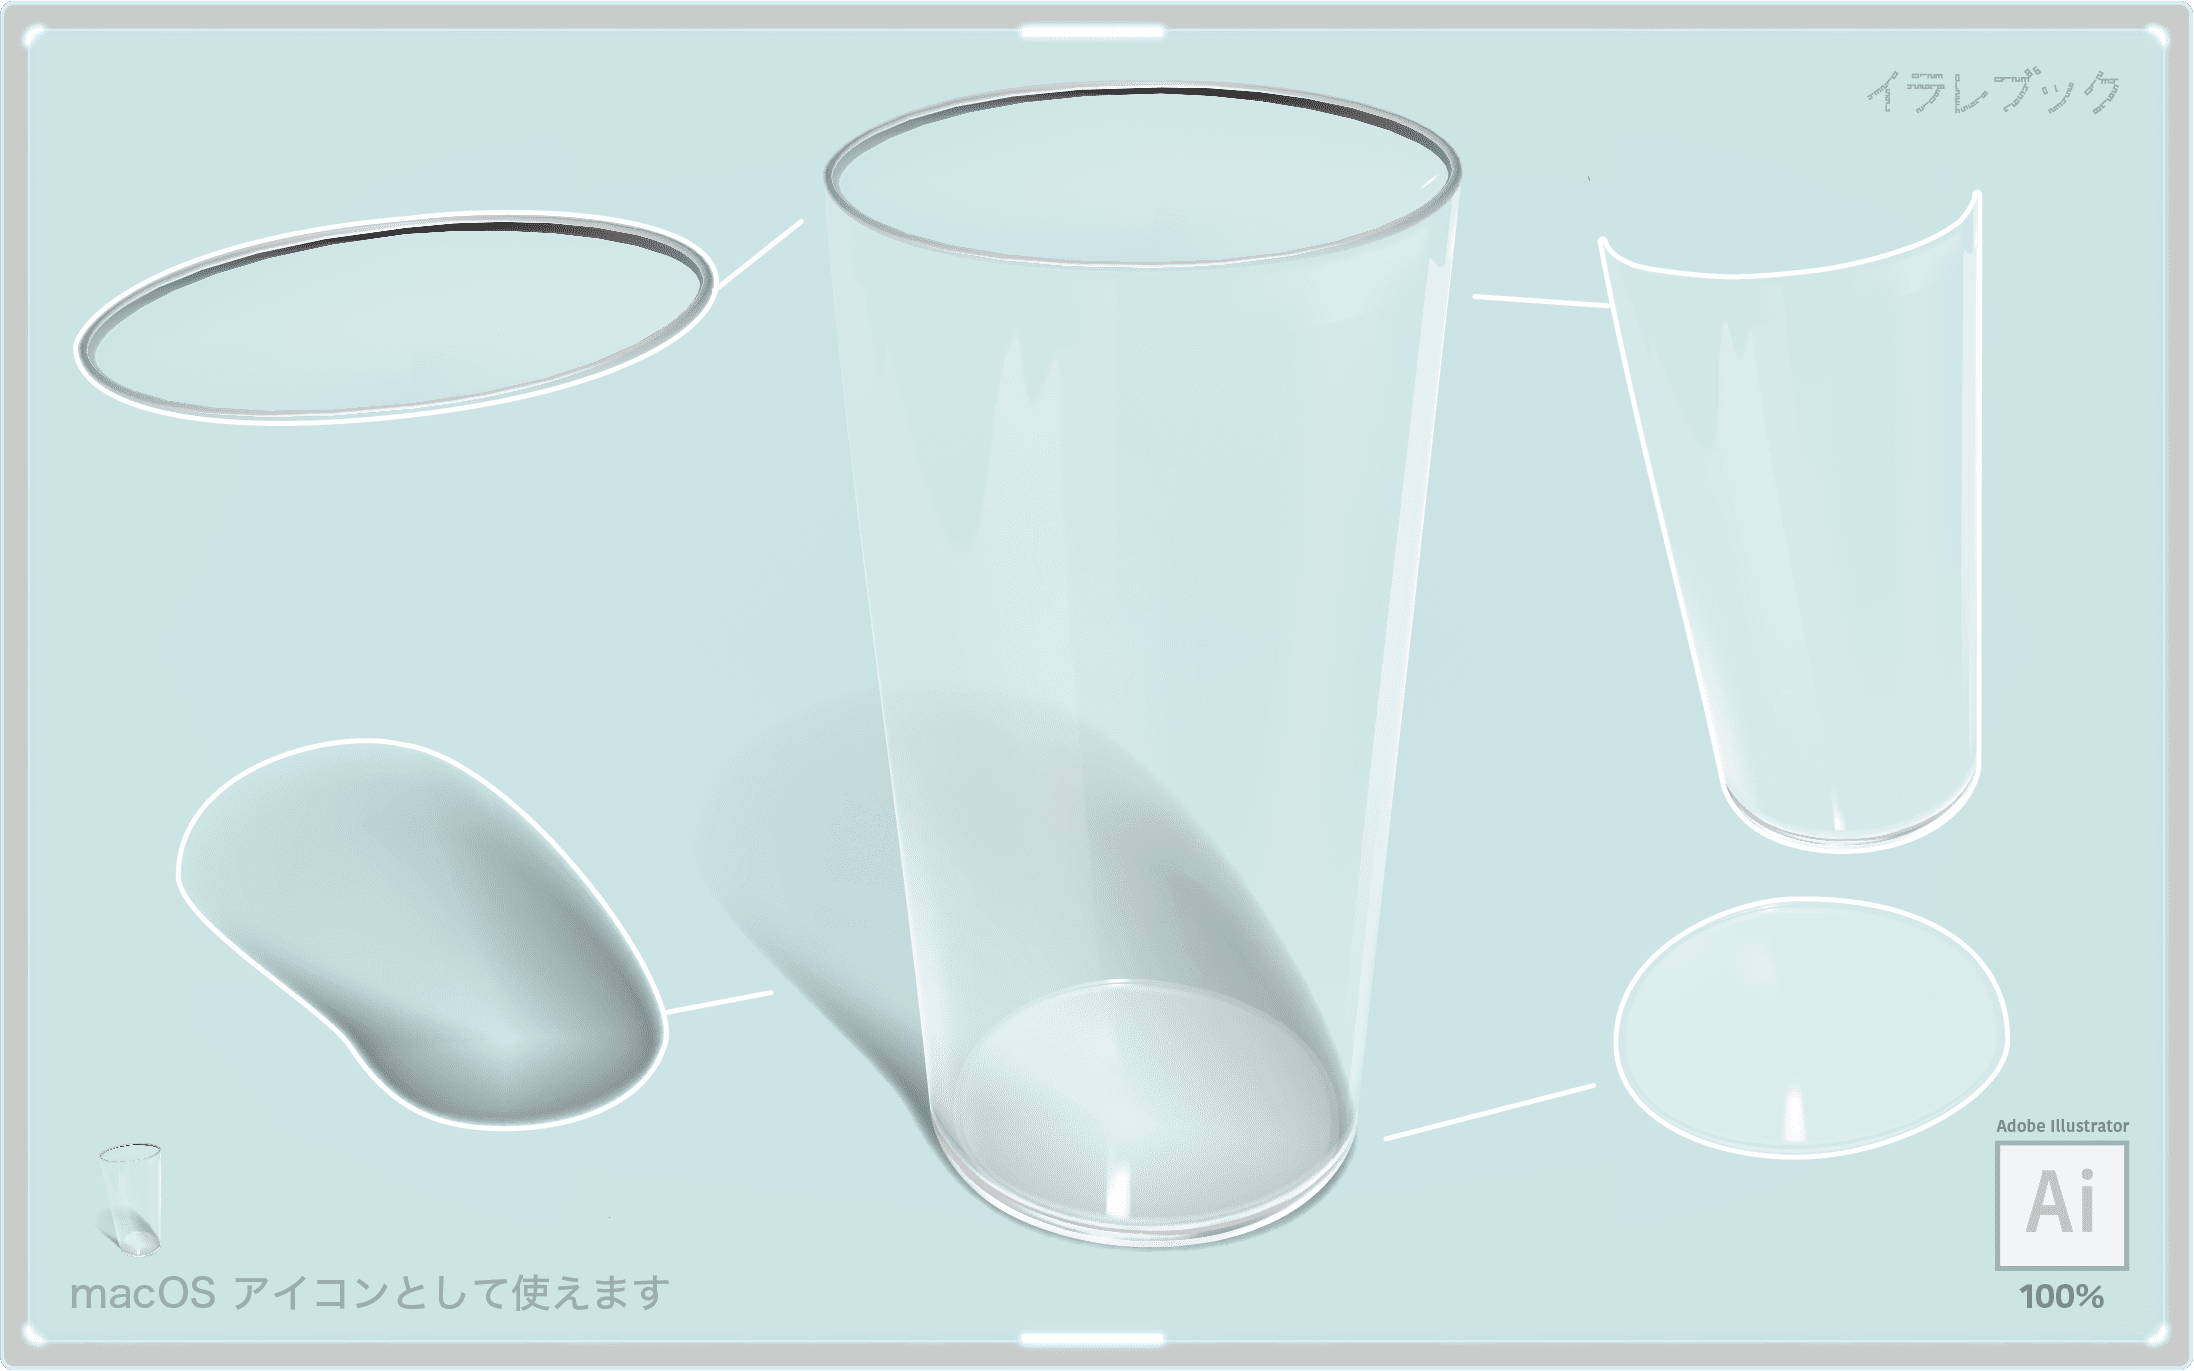 うすはりグラス おすすめグラス 日本酒に 薄張りグラスと食洗機 割れやすい